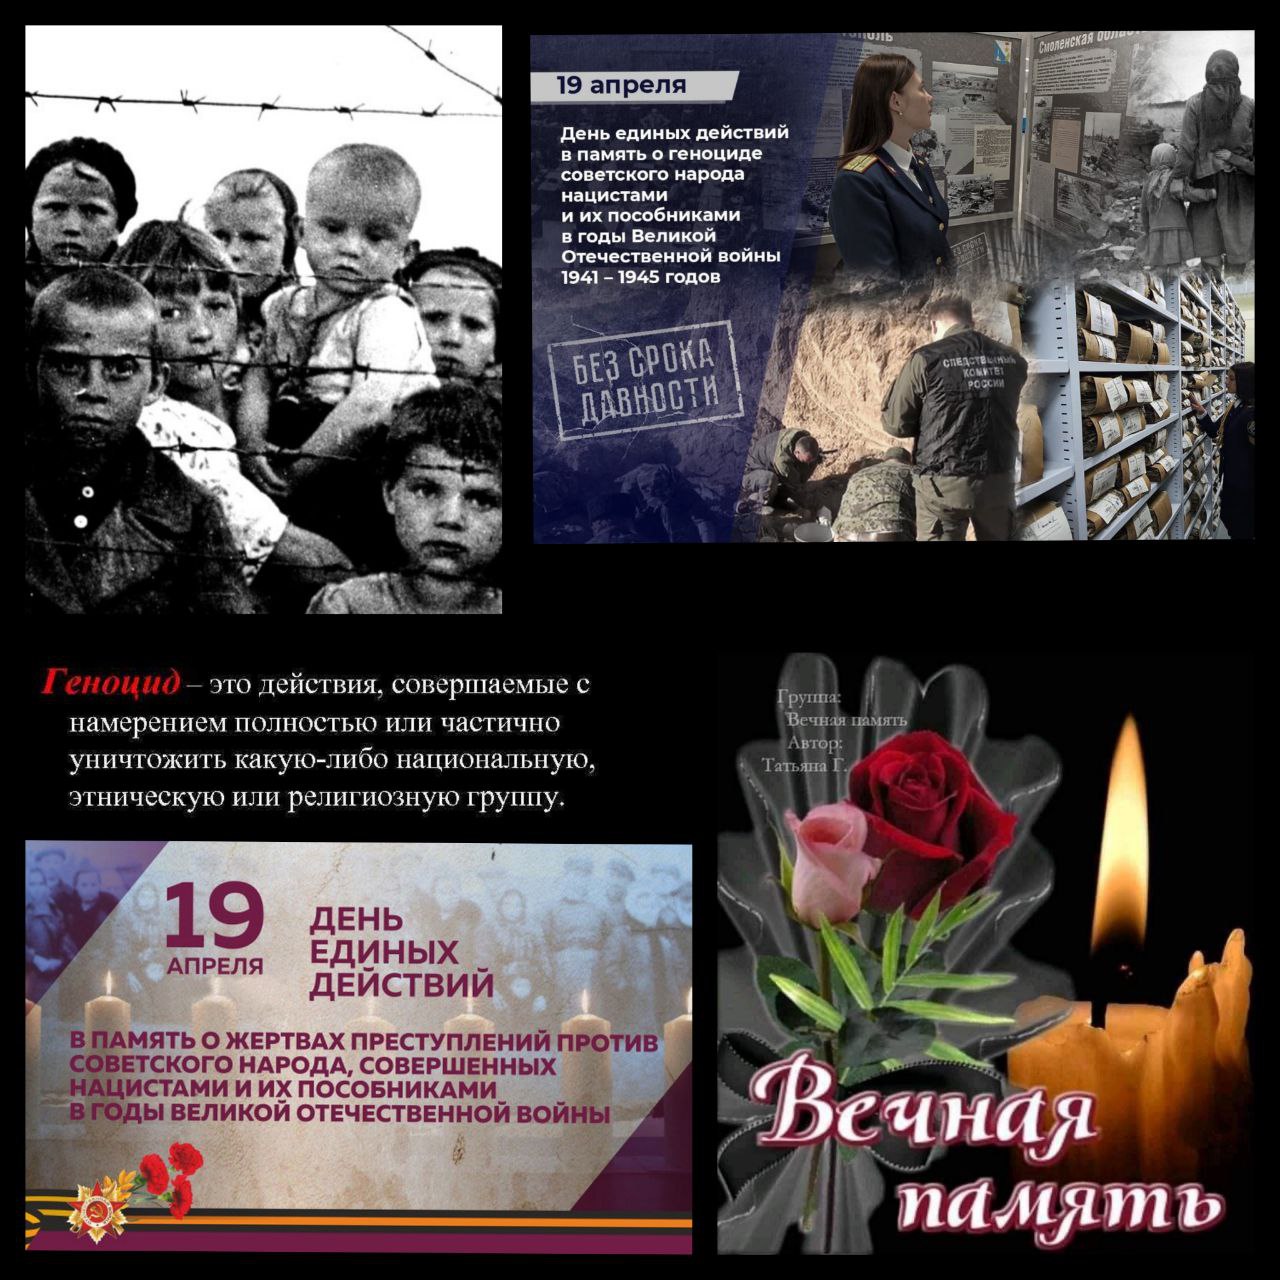 19 апреля день геноцида советского народа. День единых действий в память о геноциде картинки.